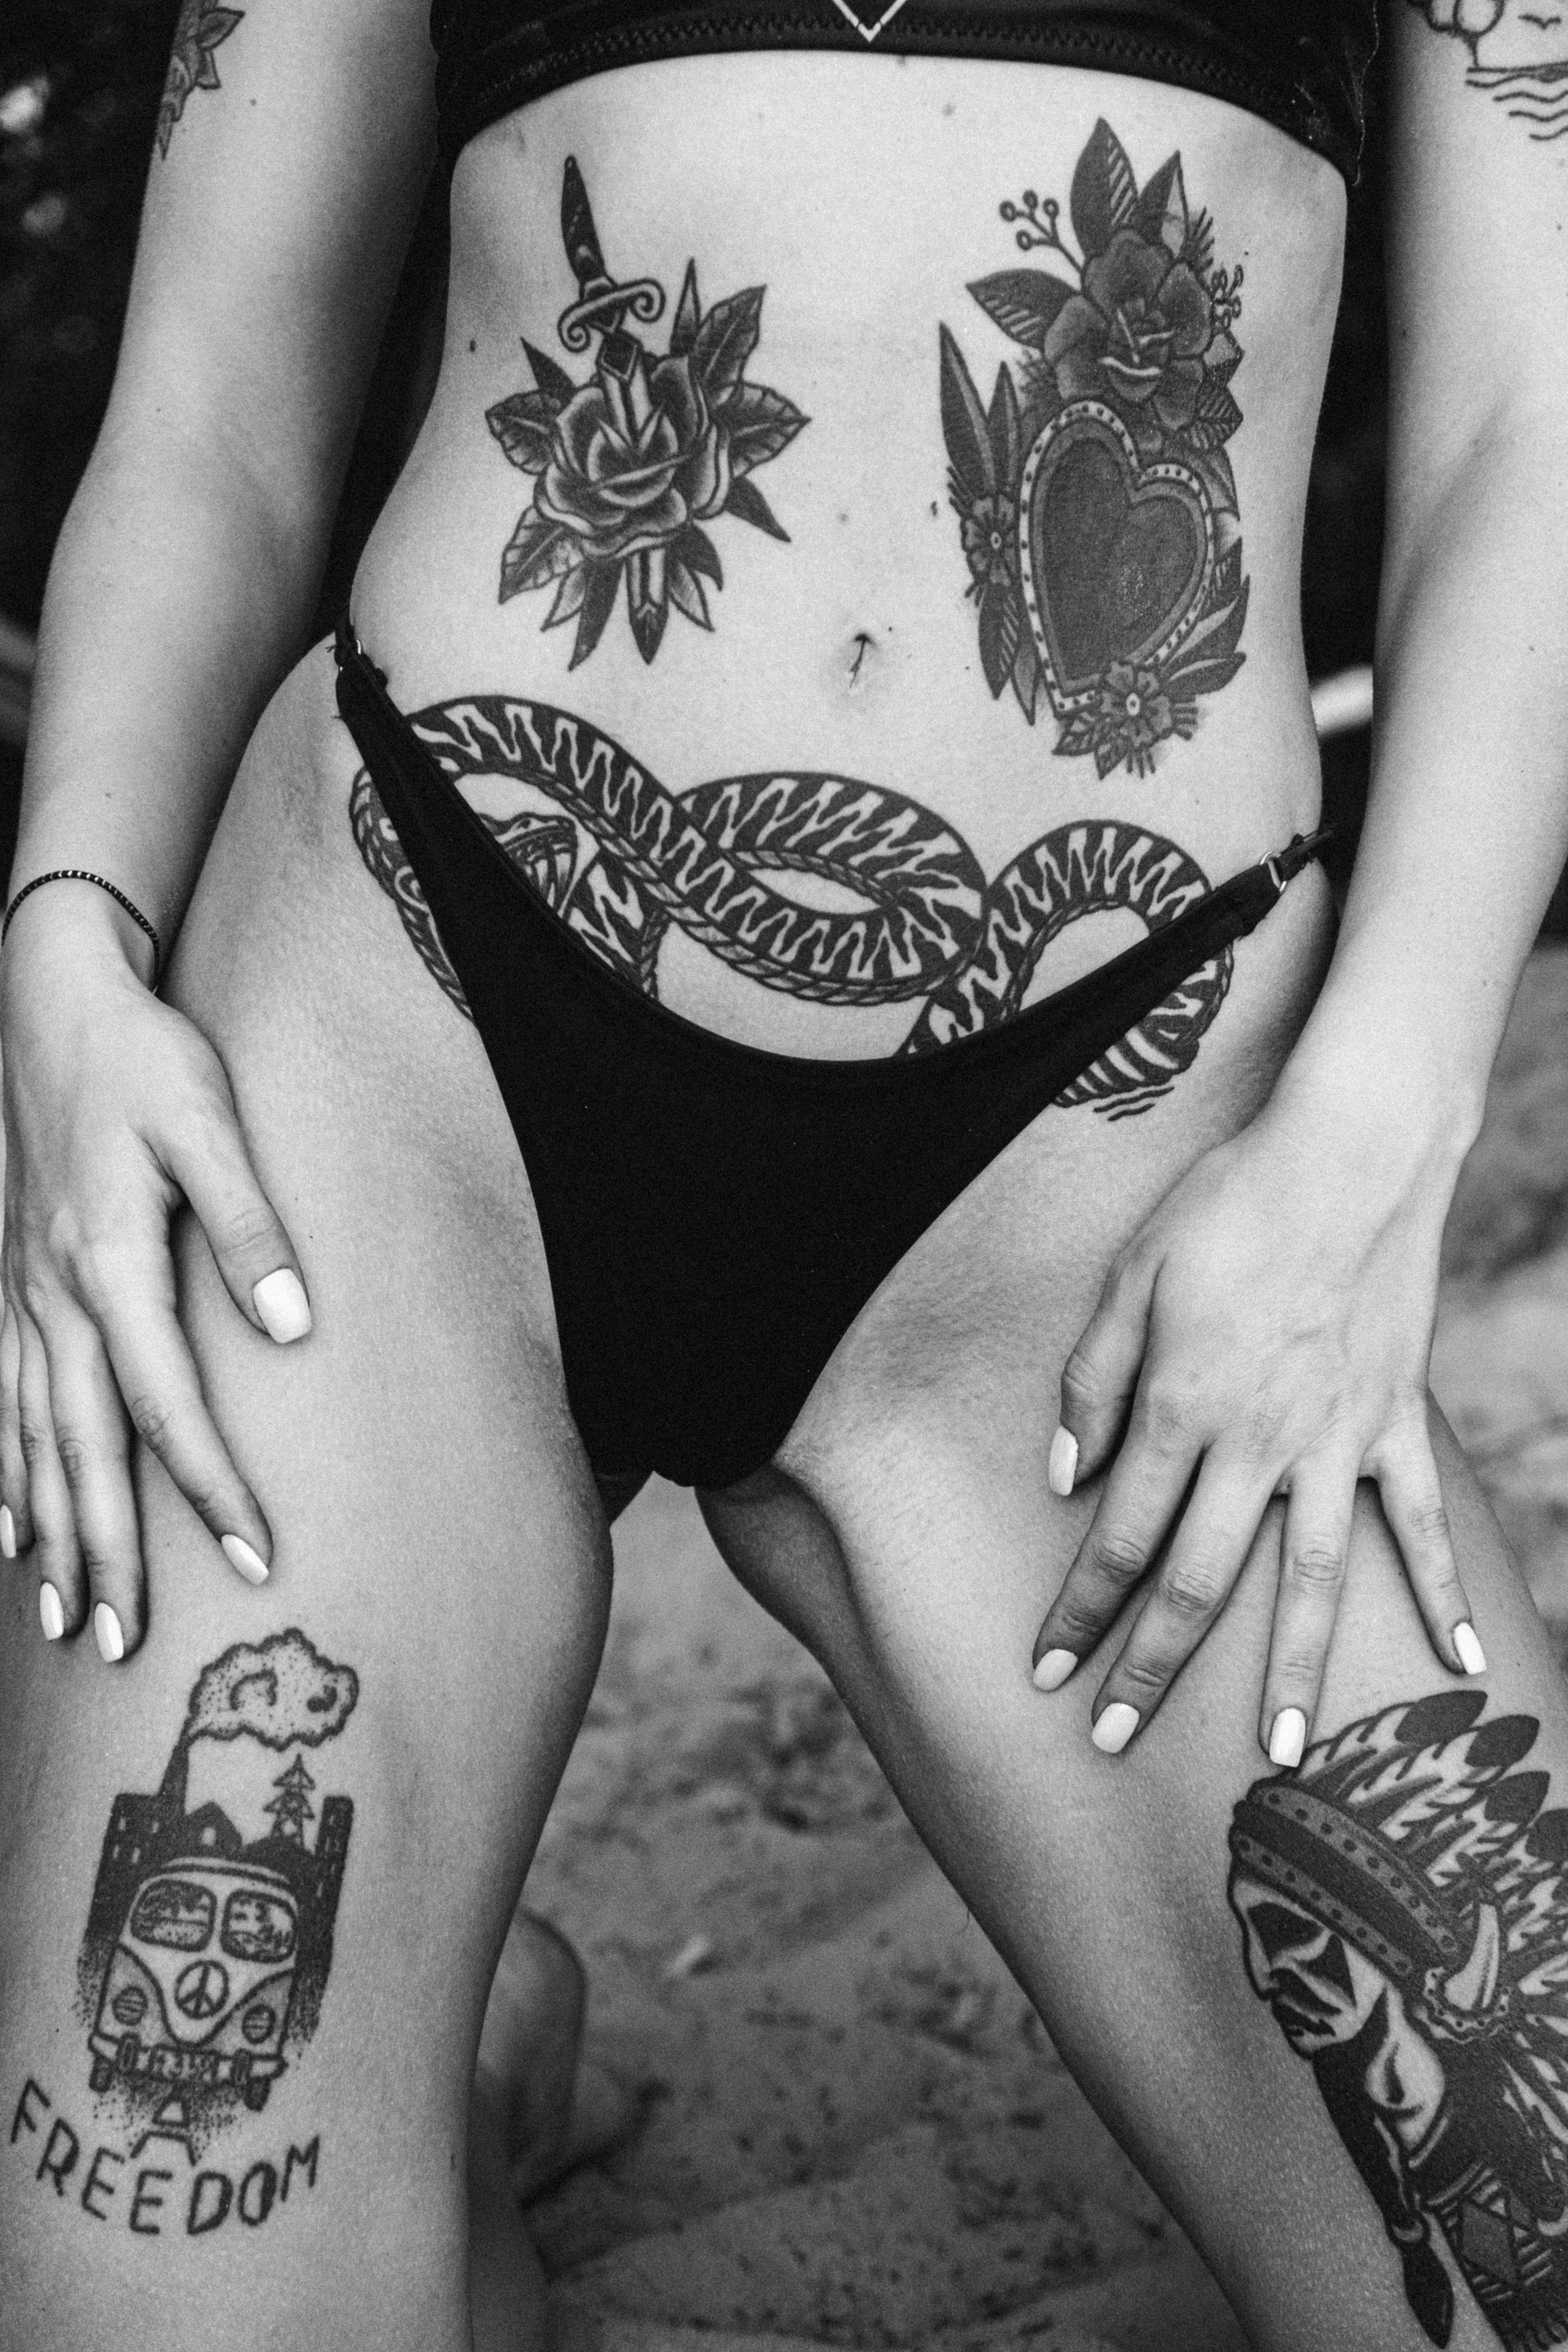 Eine Frau enthüllt ihre Tattoos | Quelle: Unsplash